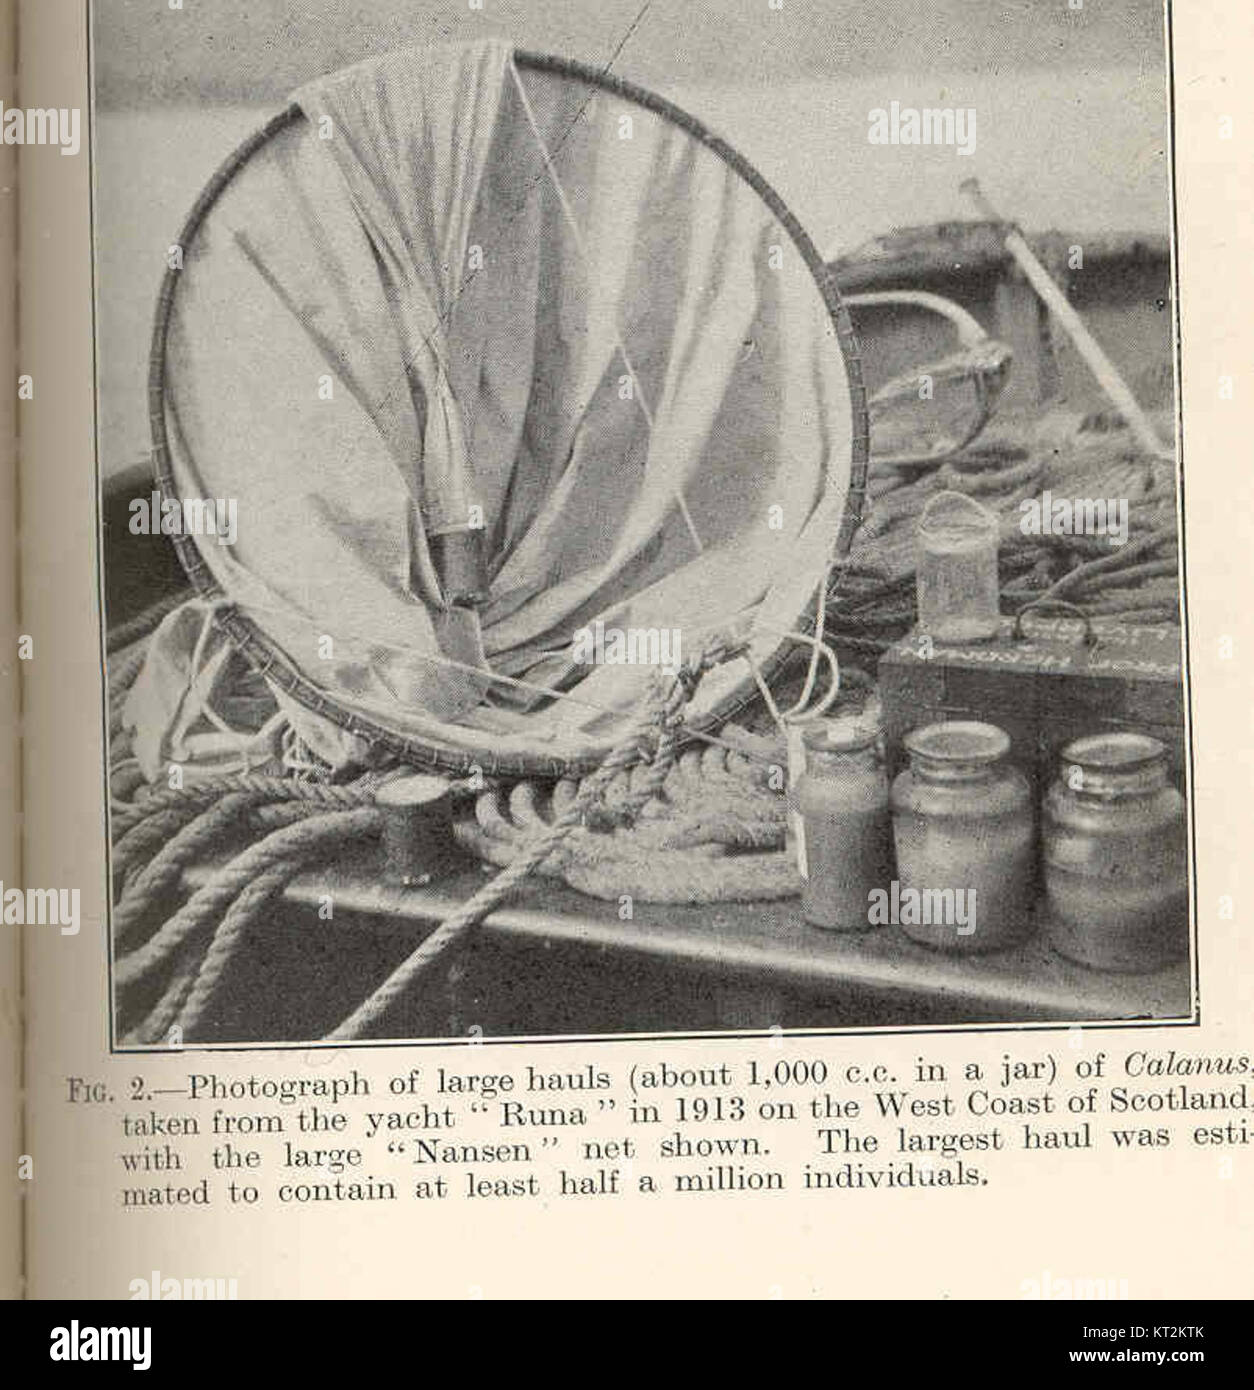 36373 Fotografia di cale di grandi dimensioni (circa 1.000 cc in un vasetto) di Calanus presi dallo yacht 'esecuzione di' nel 1913 sulla costa ovest della Scozia Foto Stock